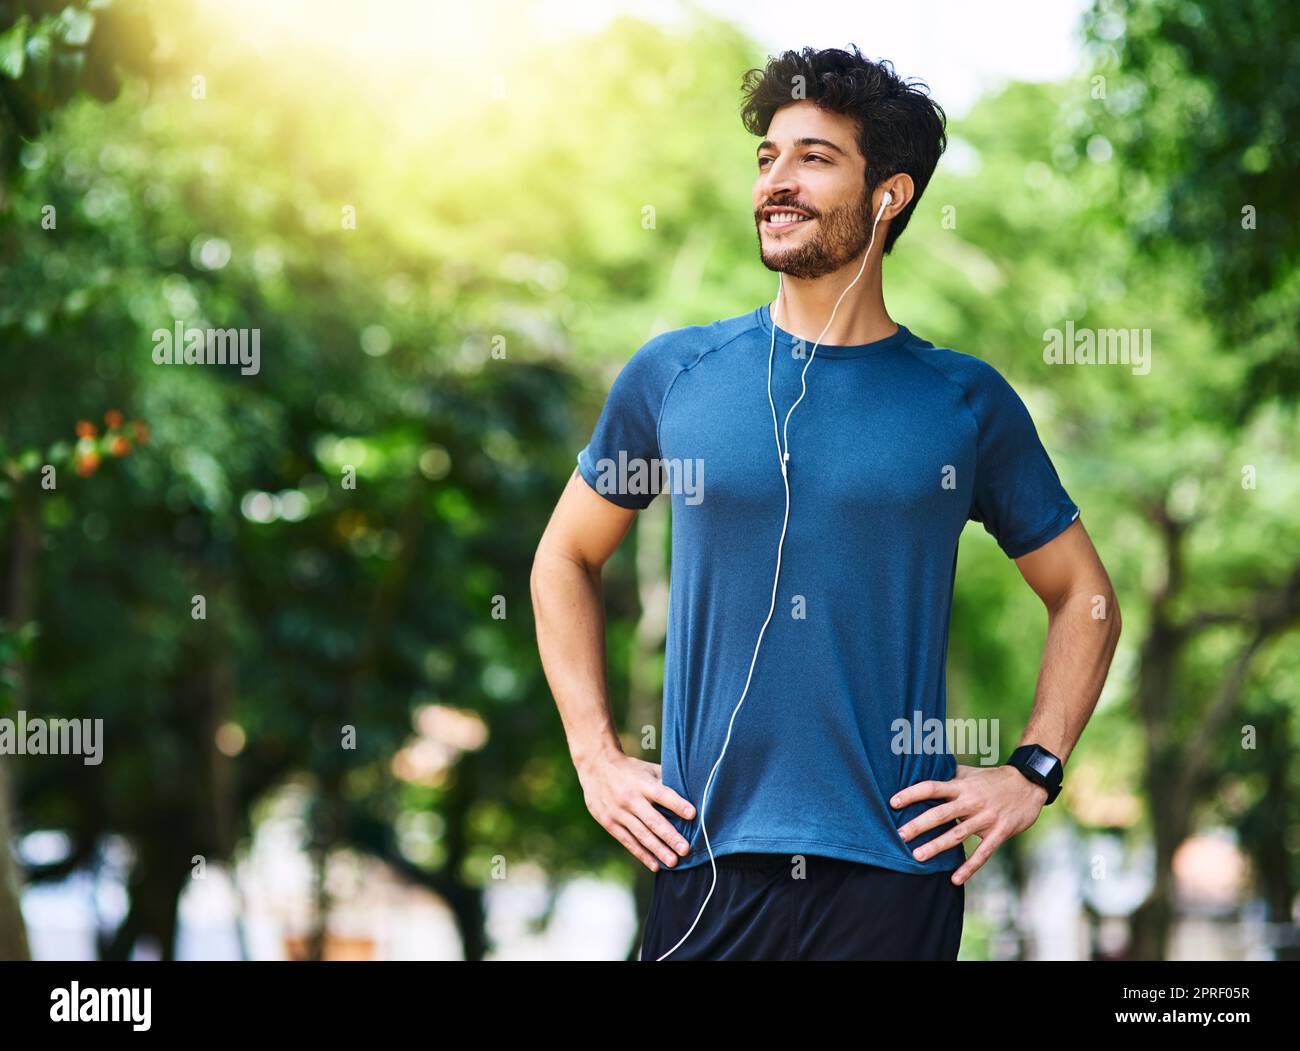 Der Einstieg in einen gesünderen Lebensstil. Ein sportlicher junger Mann, der Musik hört, während er im Freien trainiert. Stockfoto